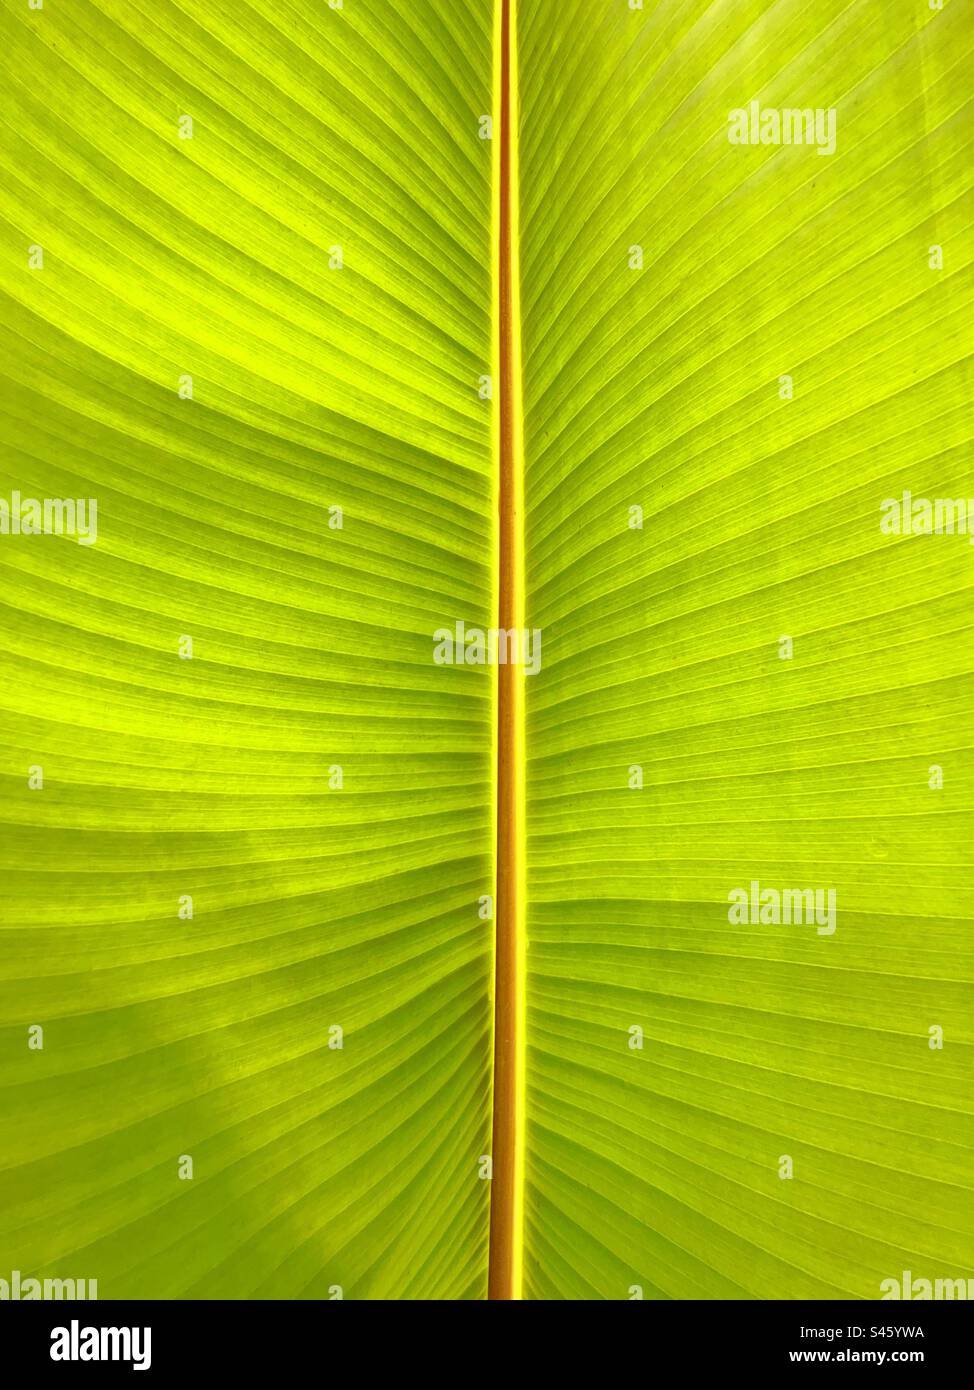 Motif de veines sur la grande feuille d'une plante tropicale A. Arrière-plans. Banque D'Images